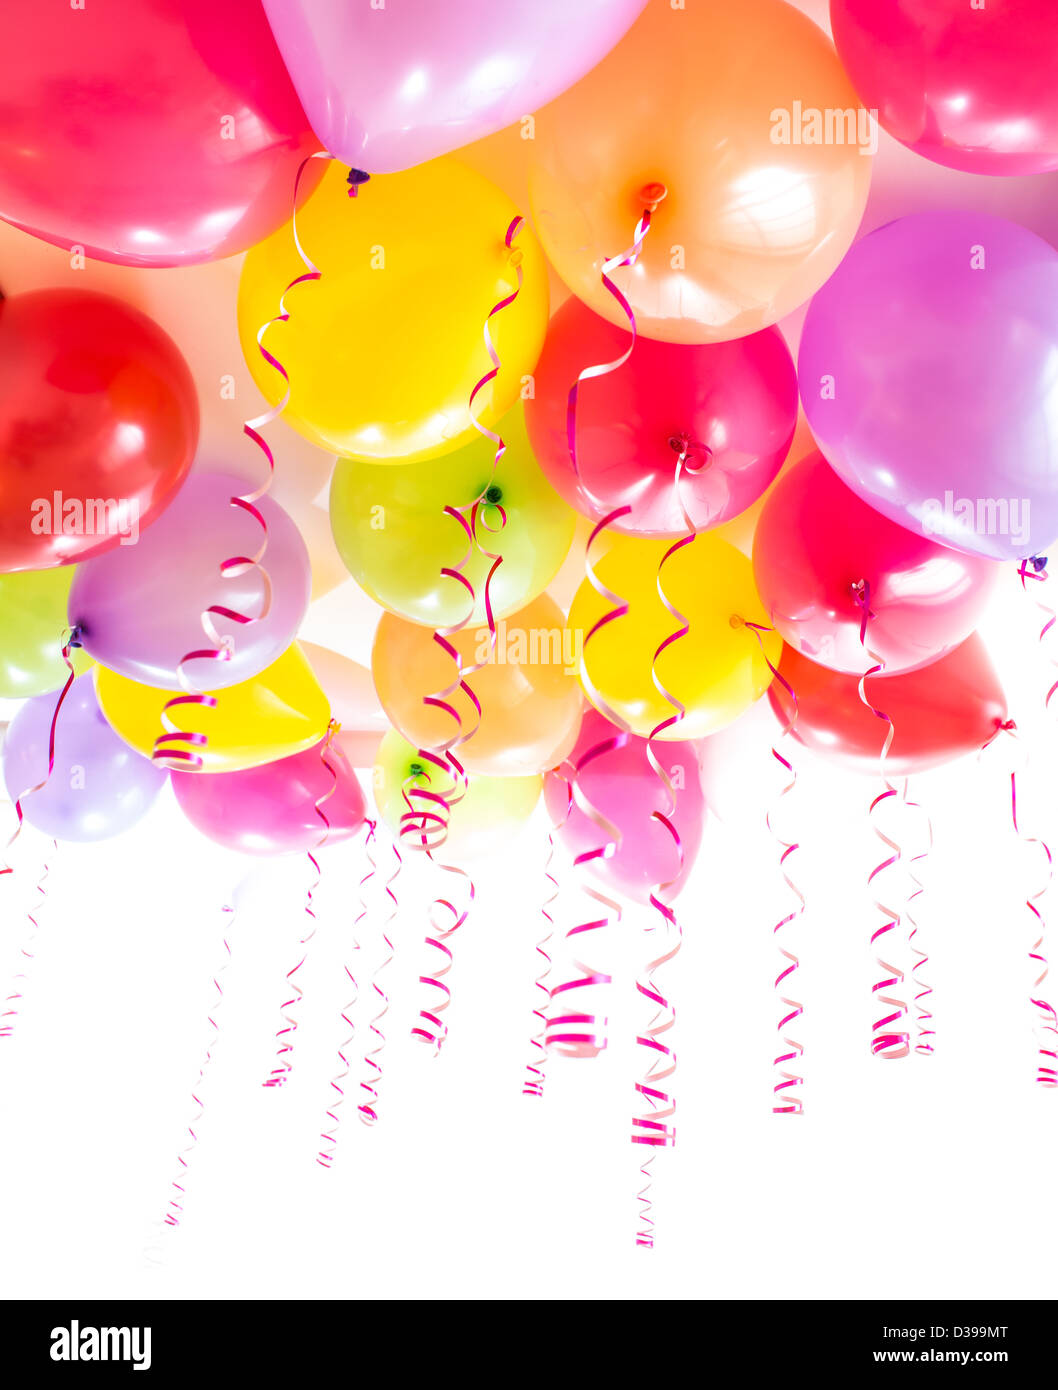 Luftballons mit Streamer für Geburtstagsfeier Partei isoliert auf weiss Stockfoto